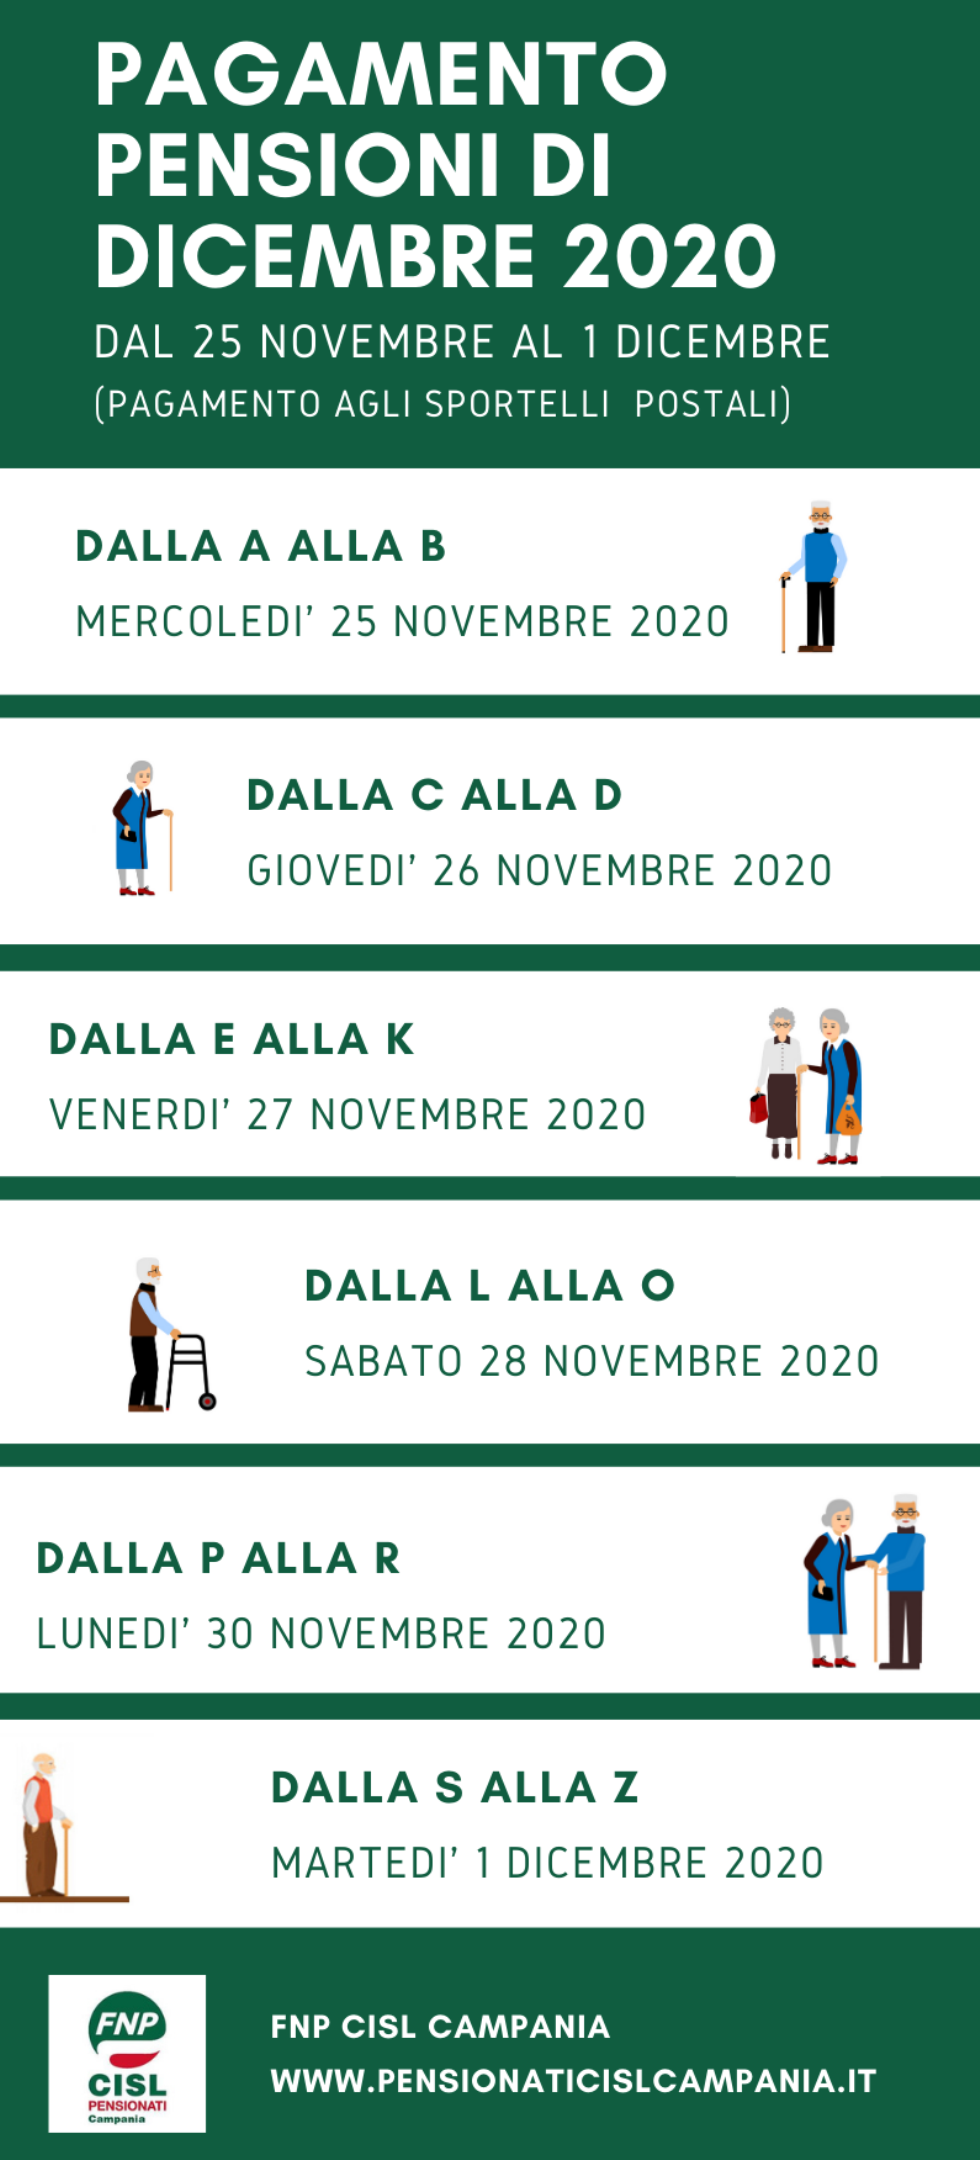 Pagamento anticipato pensione di Dicembre 2020: il calendario